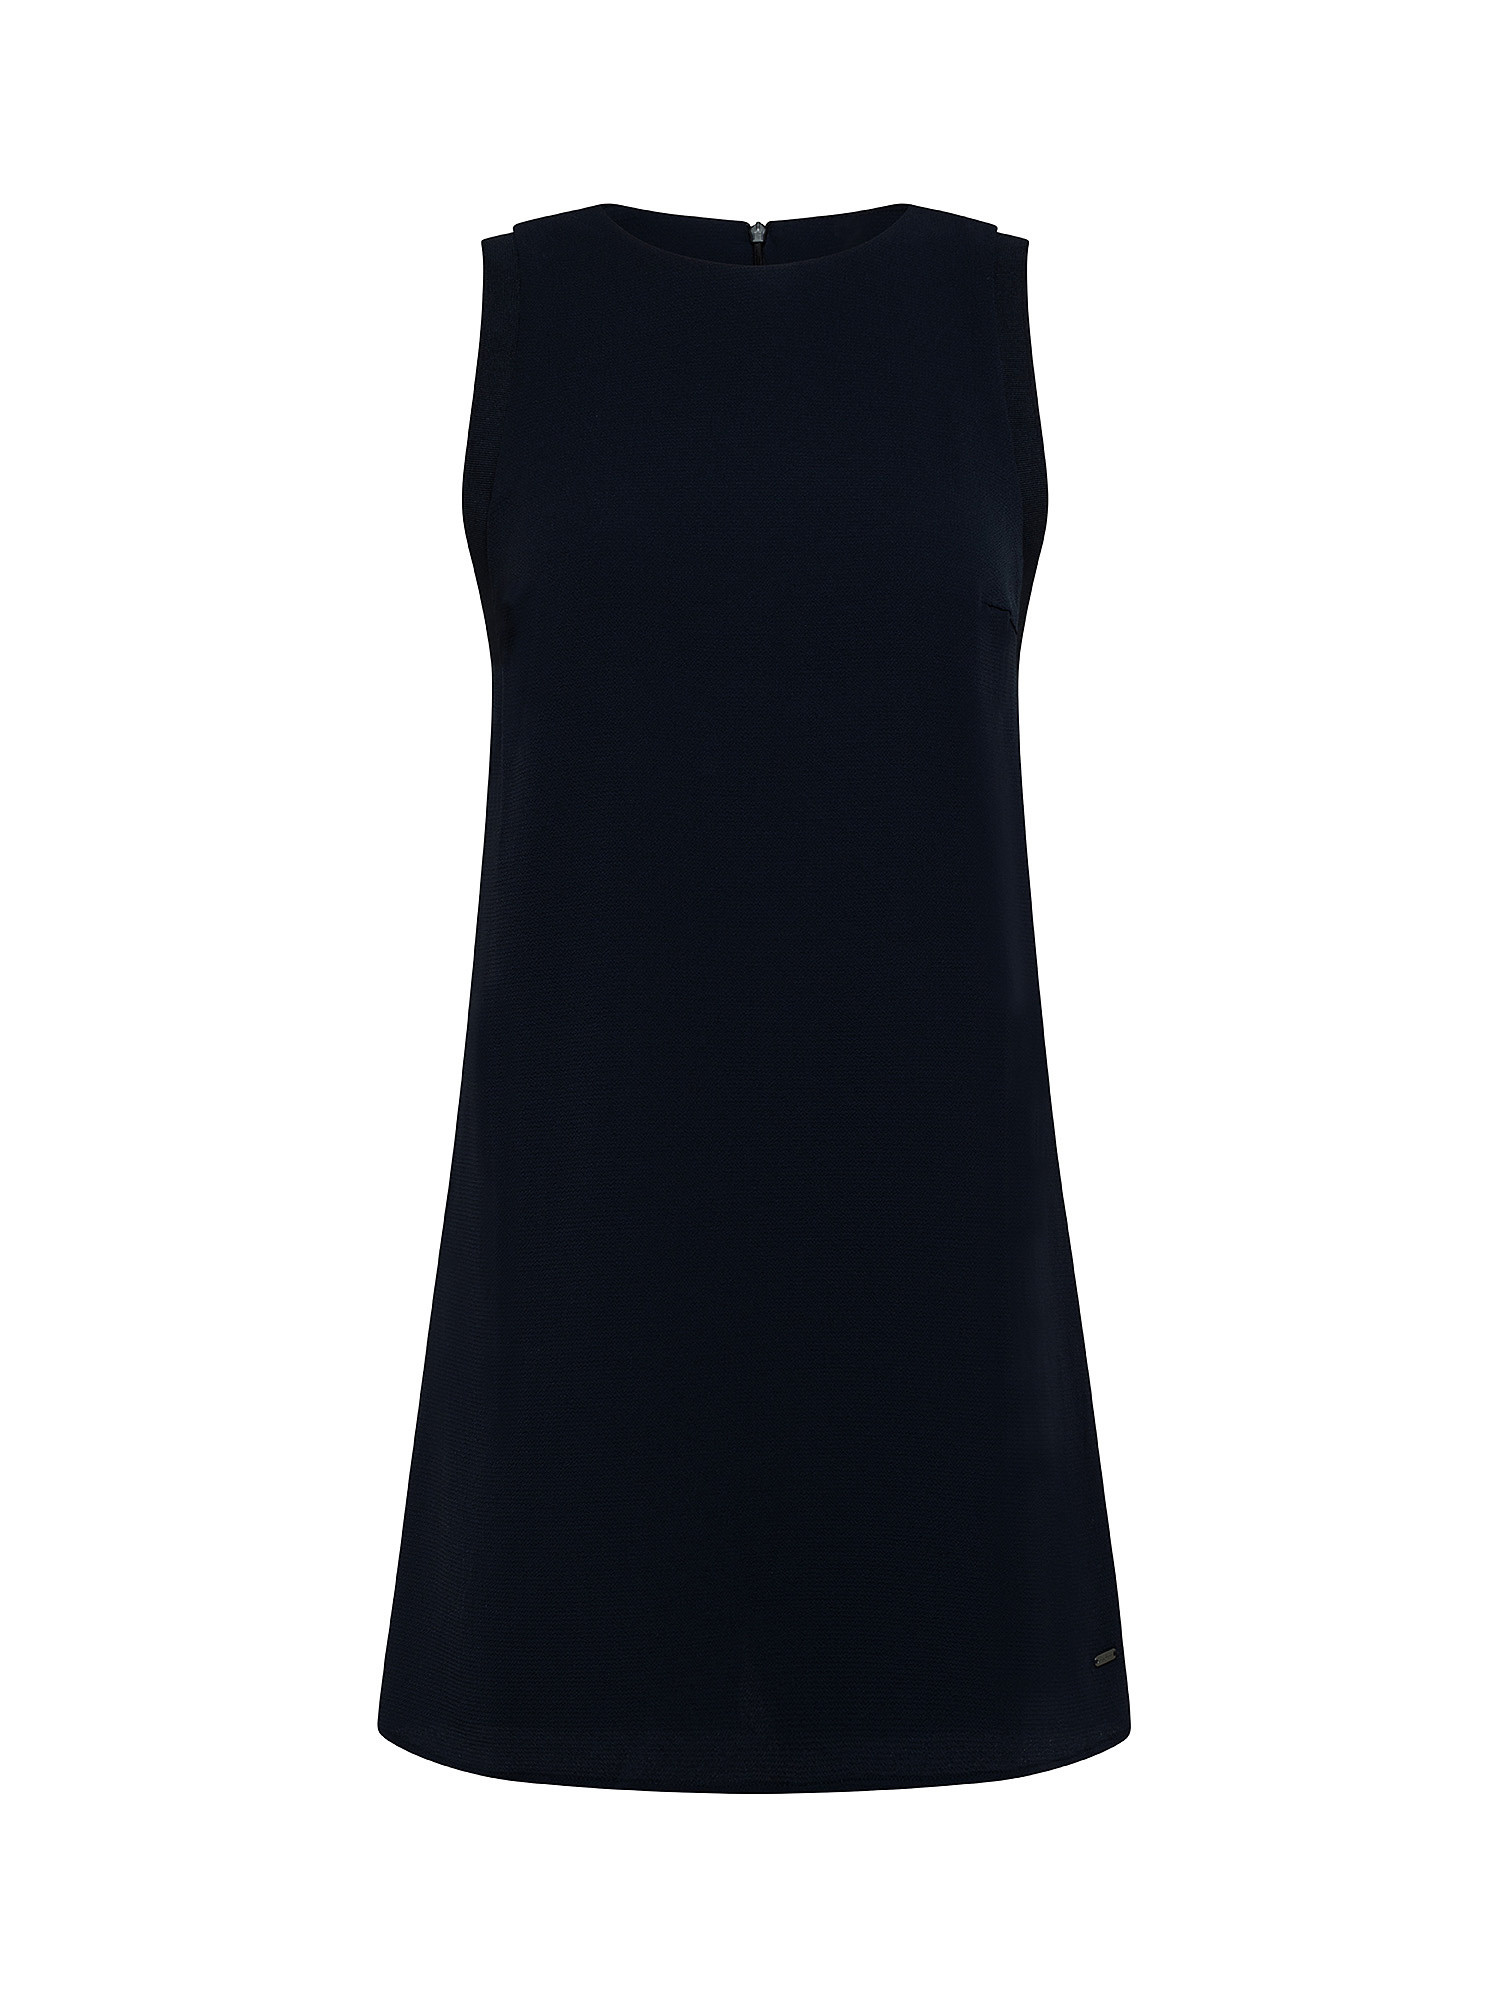 Ester short dress, Dark Blue, large image number 0